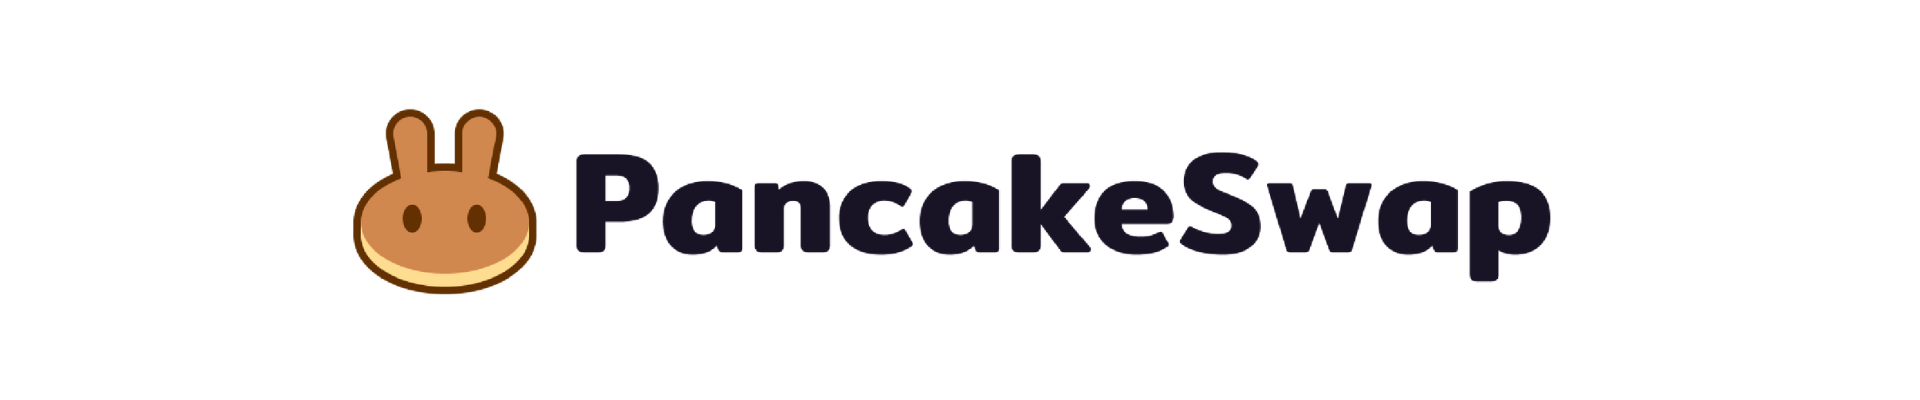 logo-pancakeswap